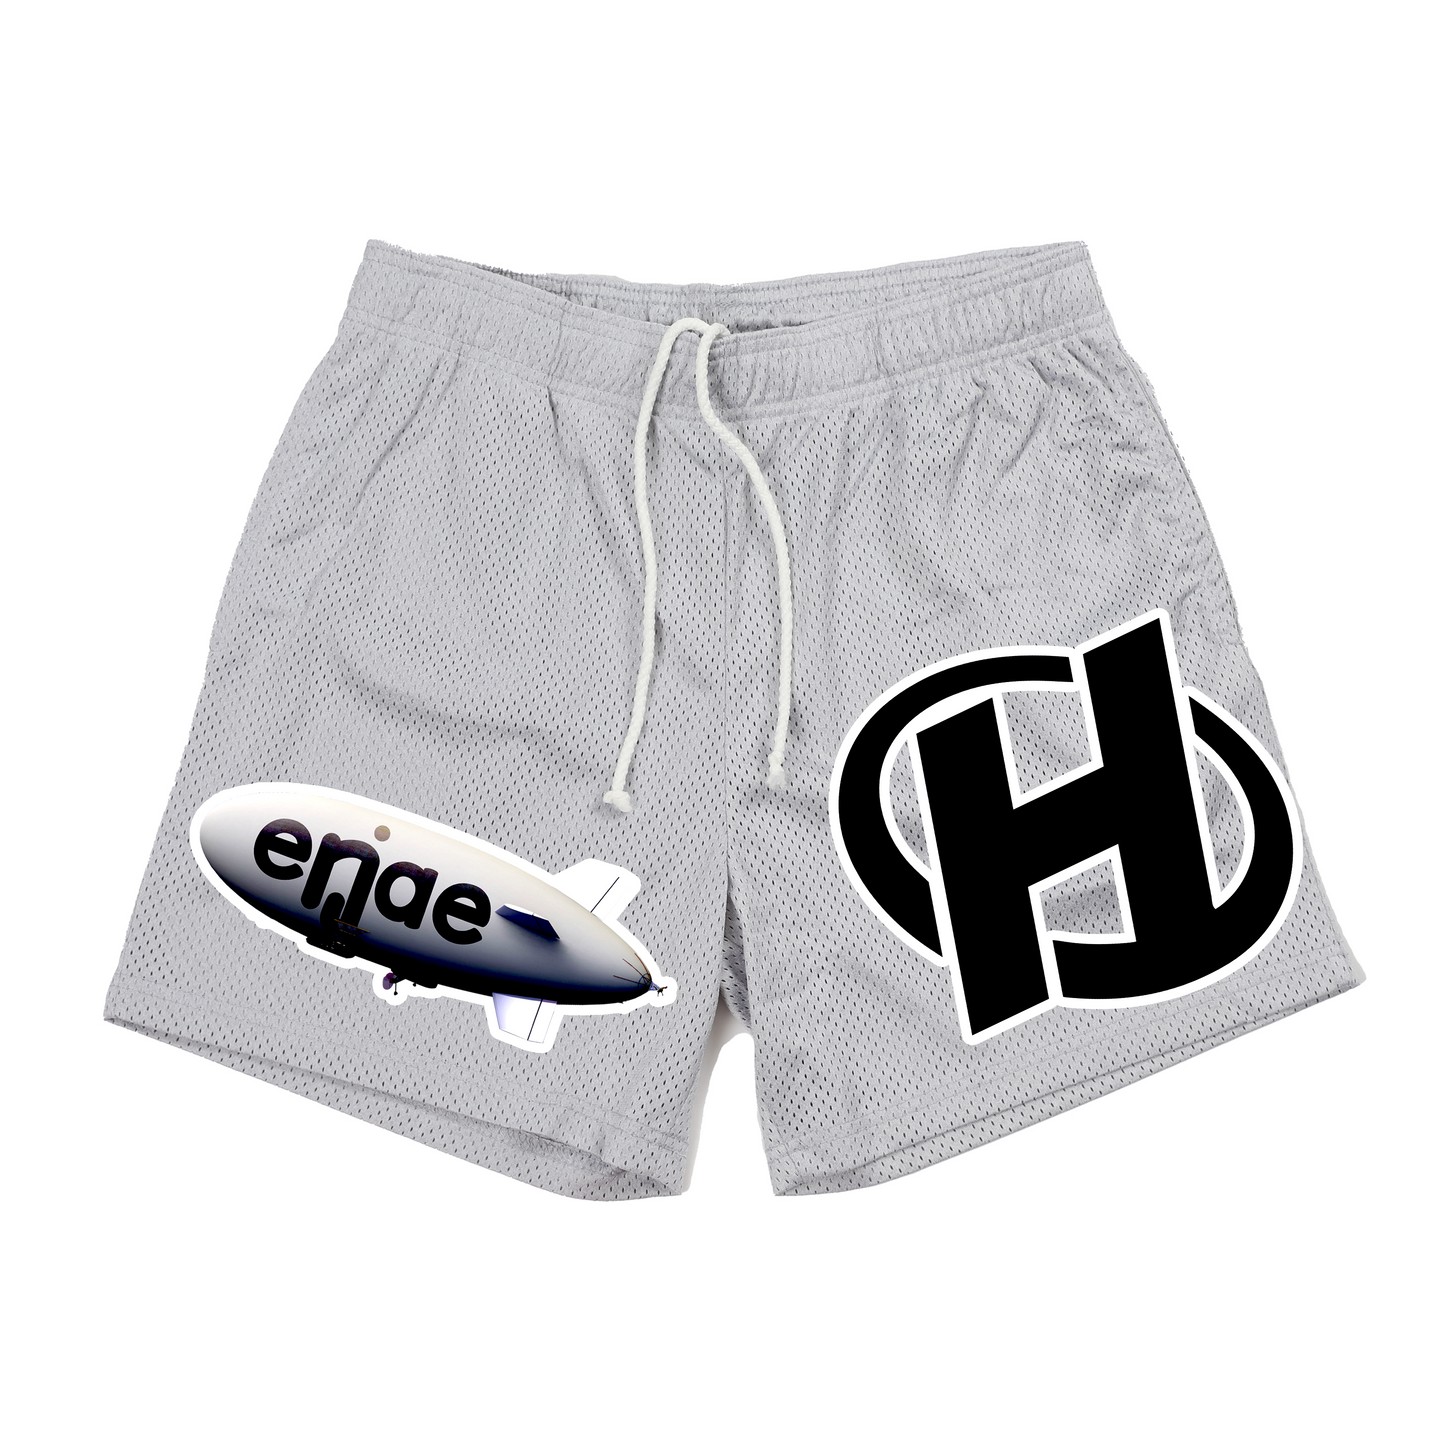 enjae x hub shorts